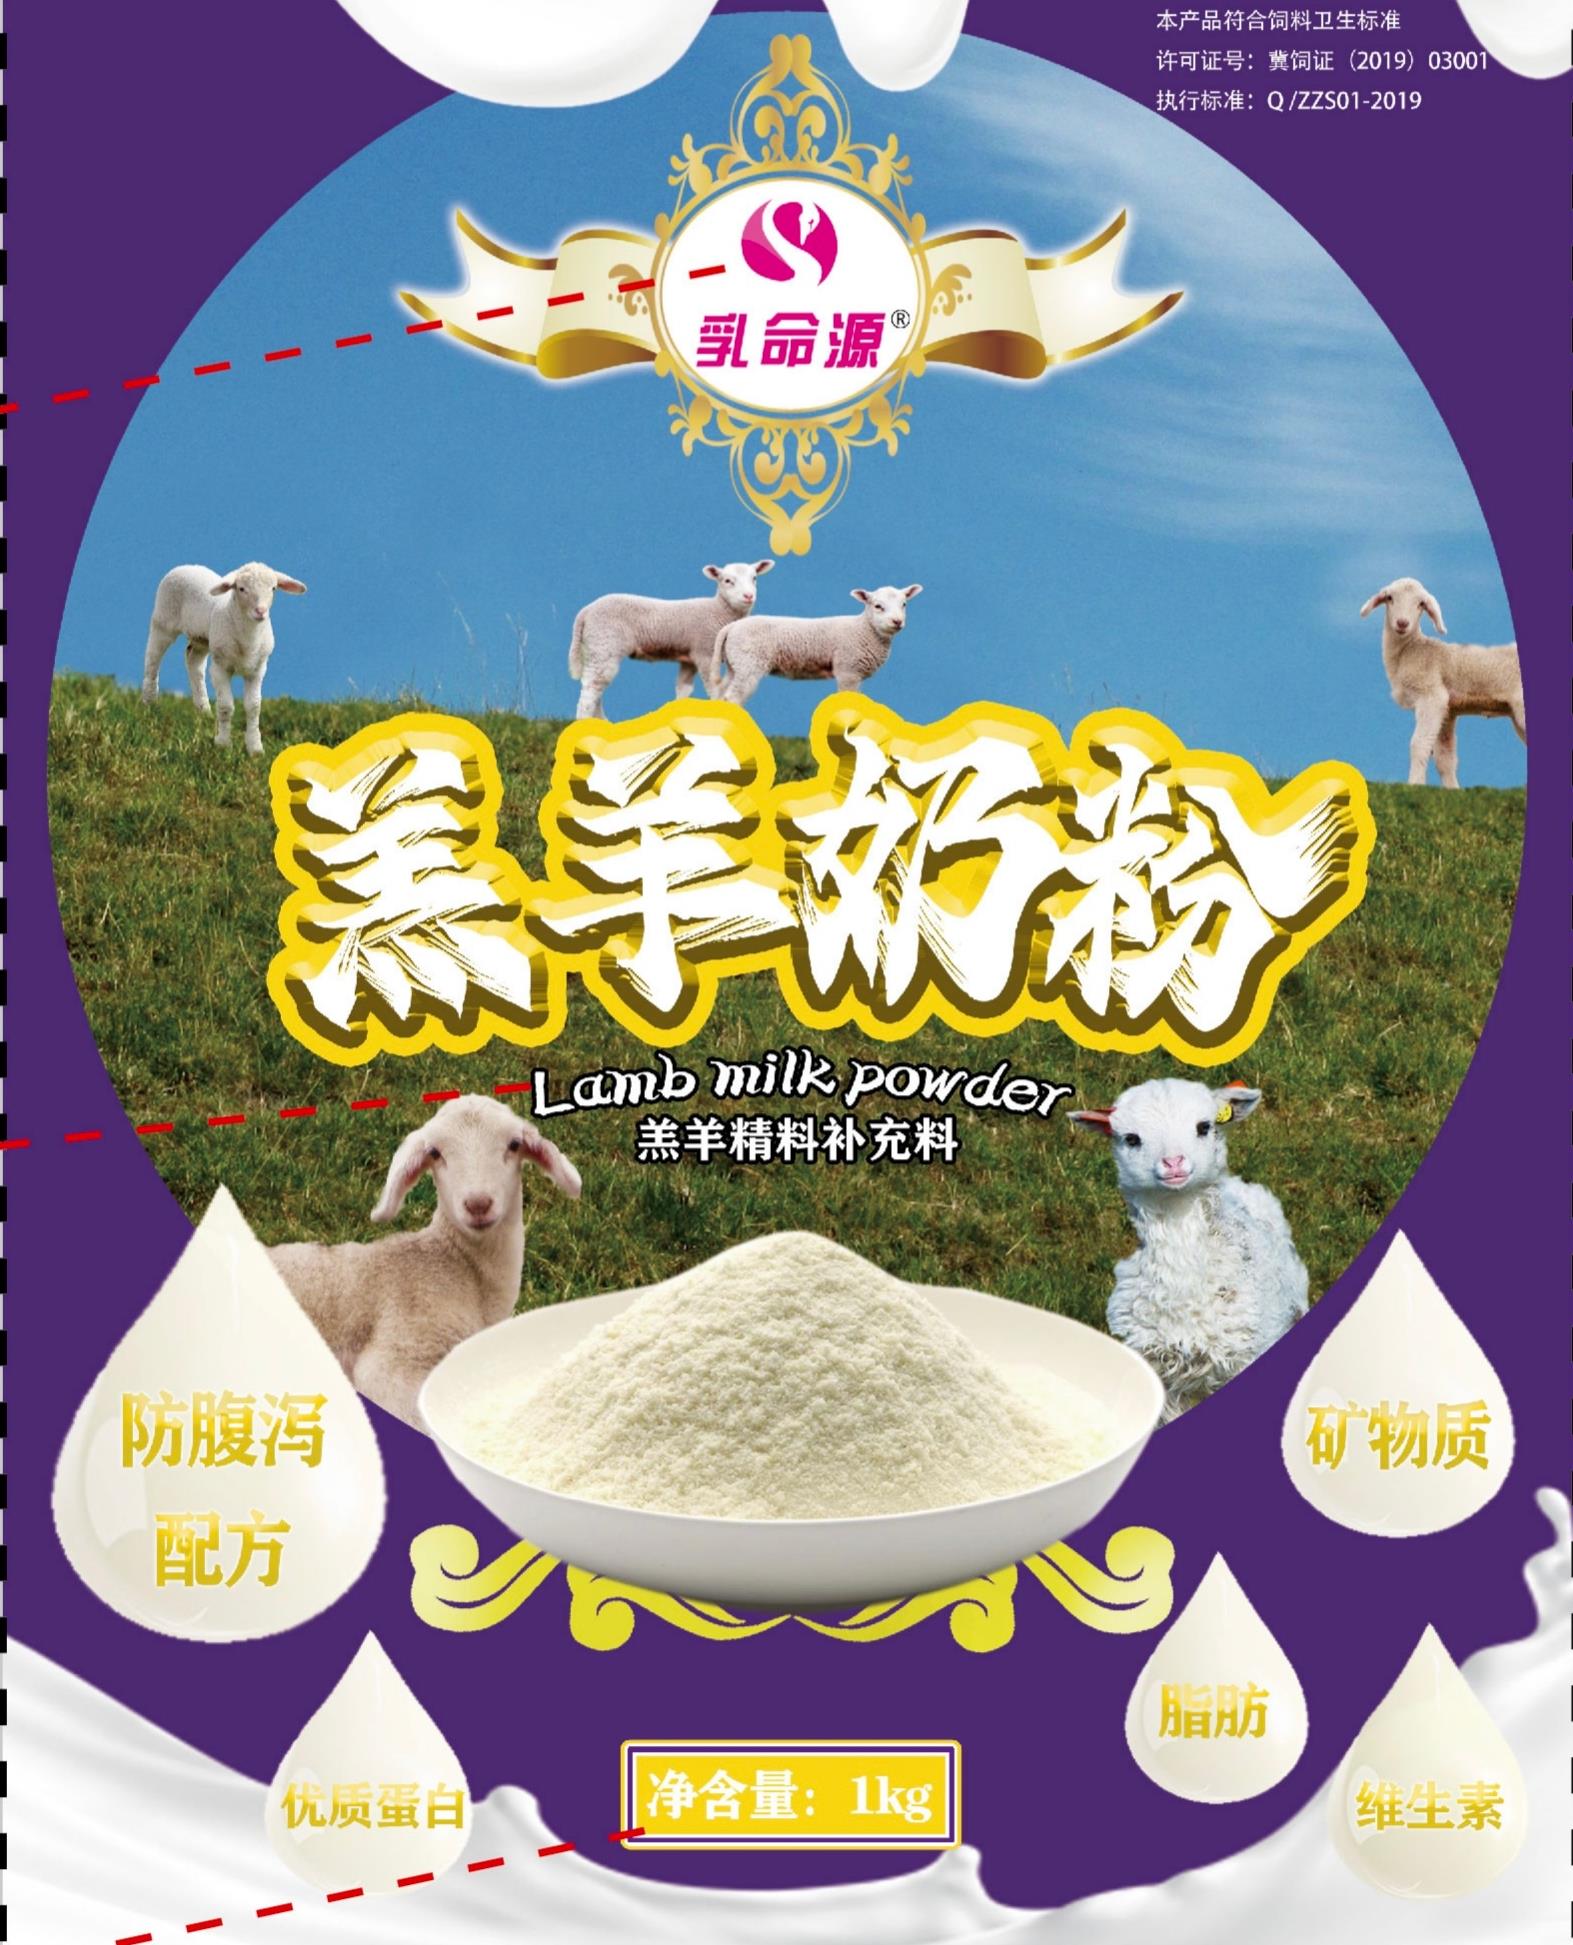 乳命源羔羊奶粉的特点增强羔羊食欲促进瘤胃发育